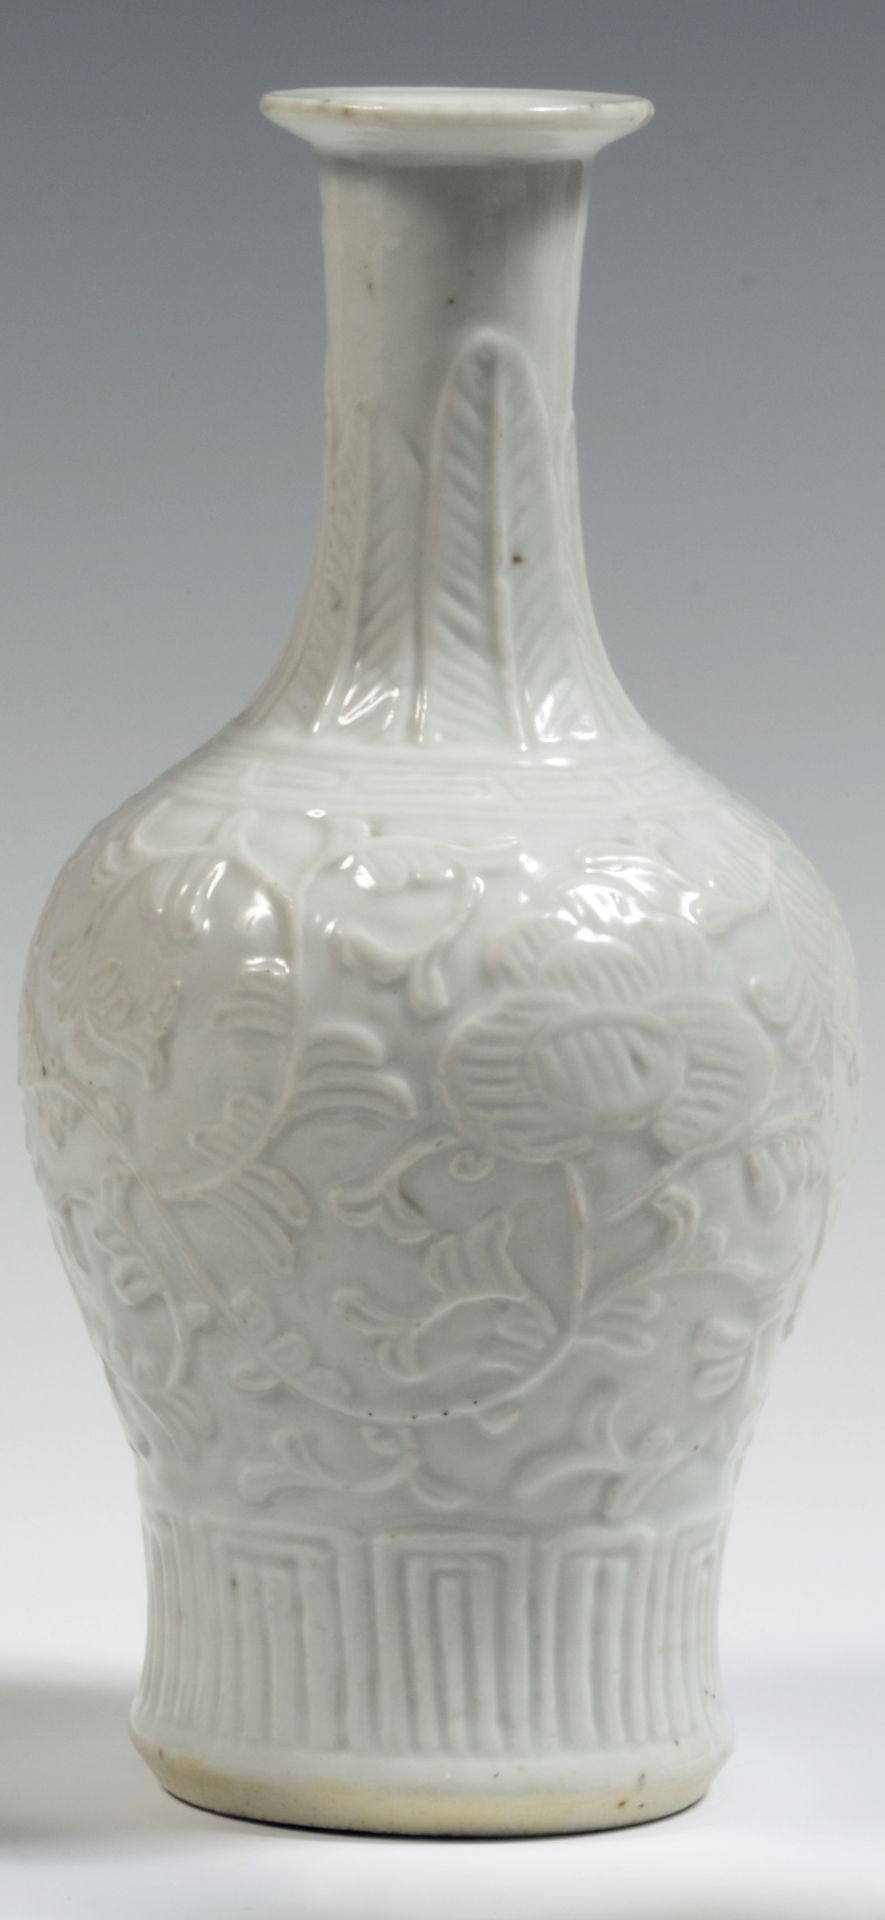 Null 
中国

一个白瓷柱形花瓶，颈部有荷花、叶子、几何图案和香蕉叶的浮雕装饰。

19世纪。 

H.23厘米。

颈部有一个小缺口。